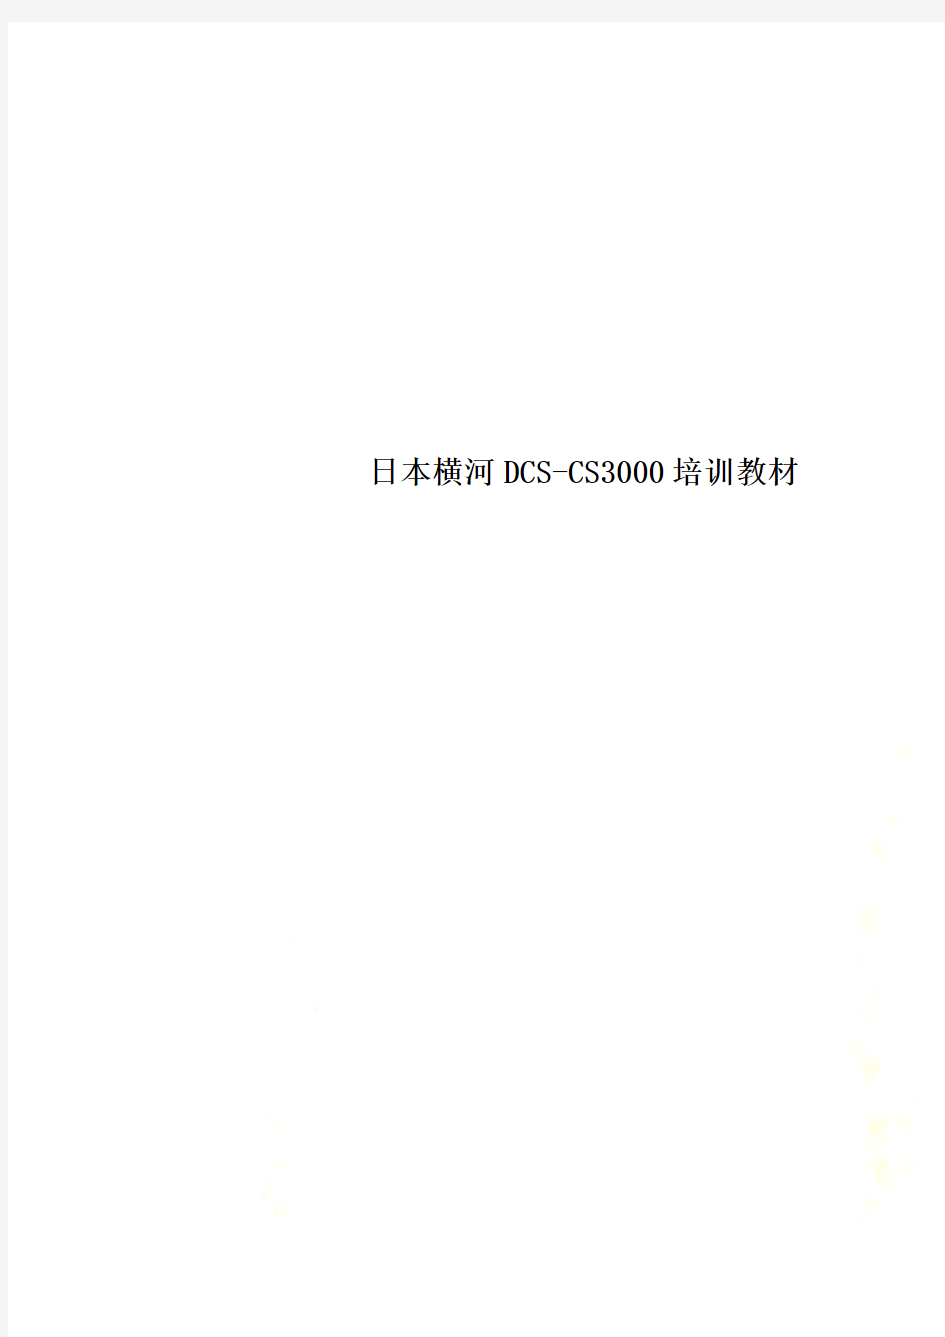 日本横河DCS-CS3000培训教材